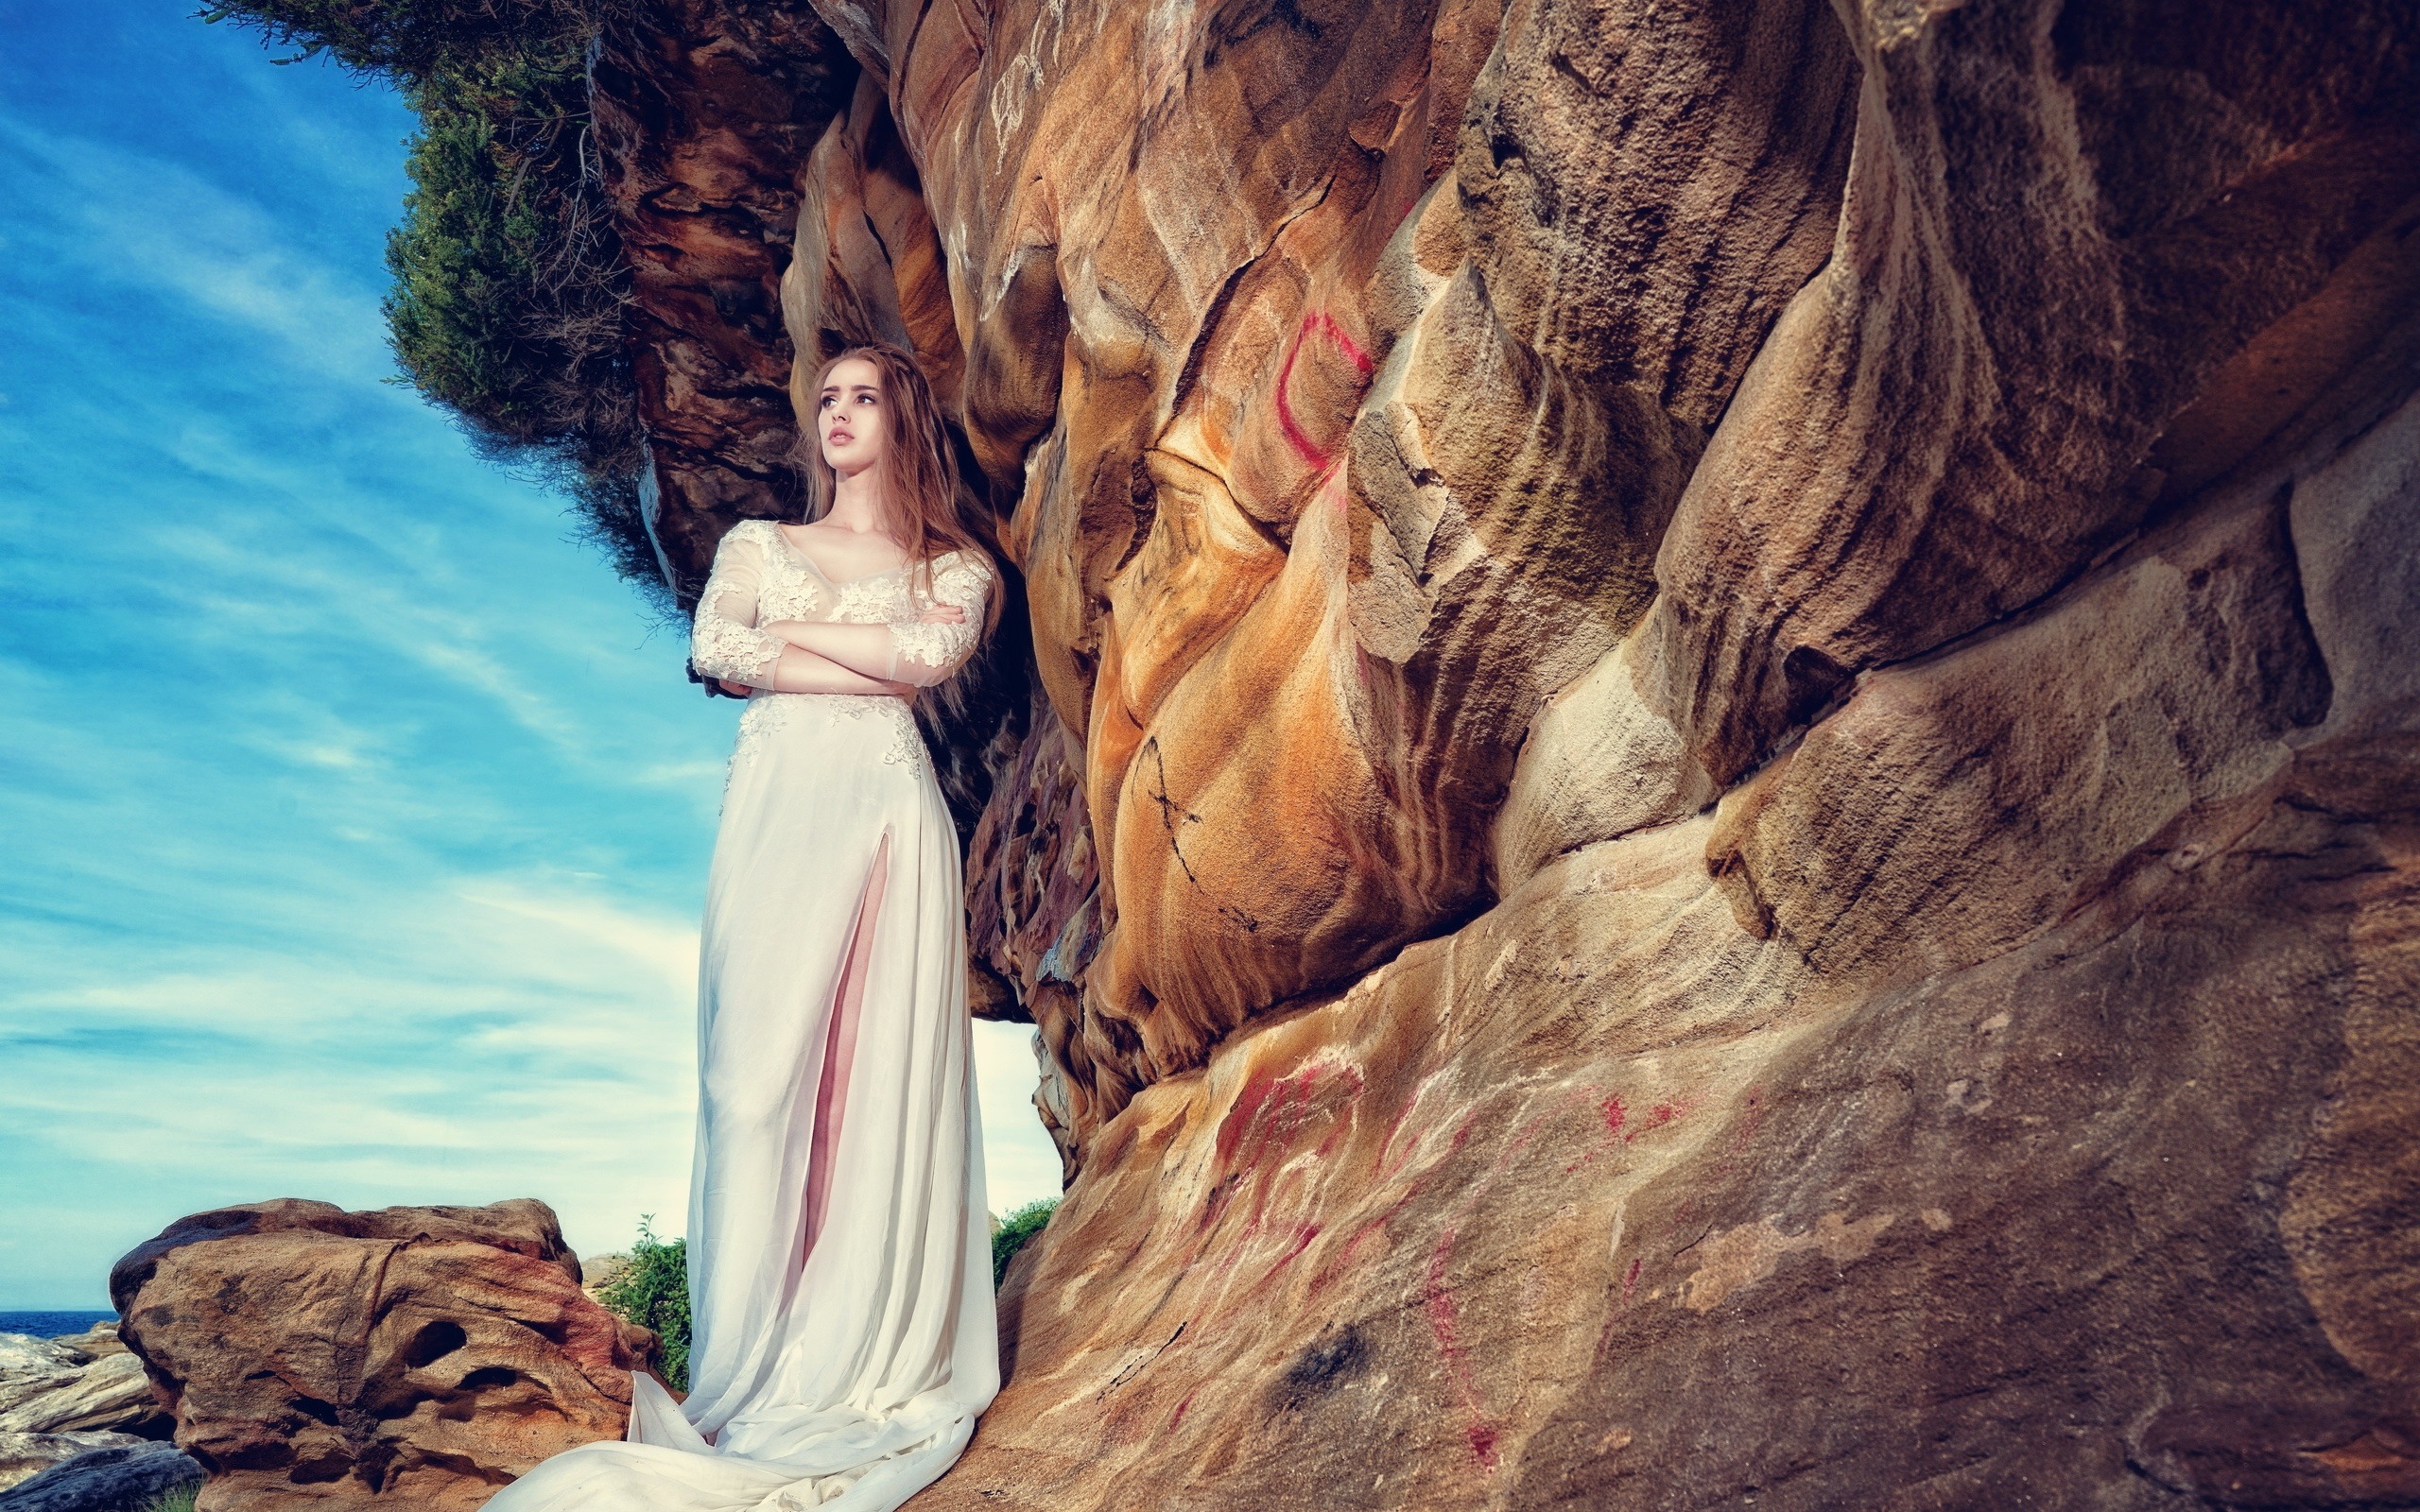 Нежная принцесса сидит на скале голышом